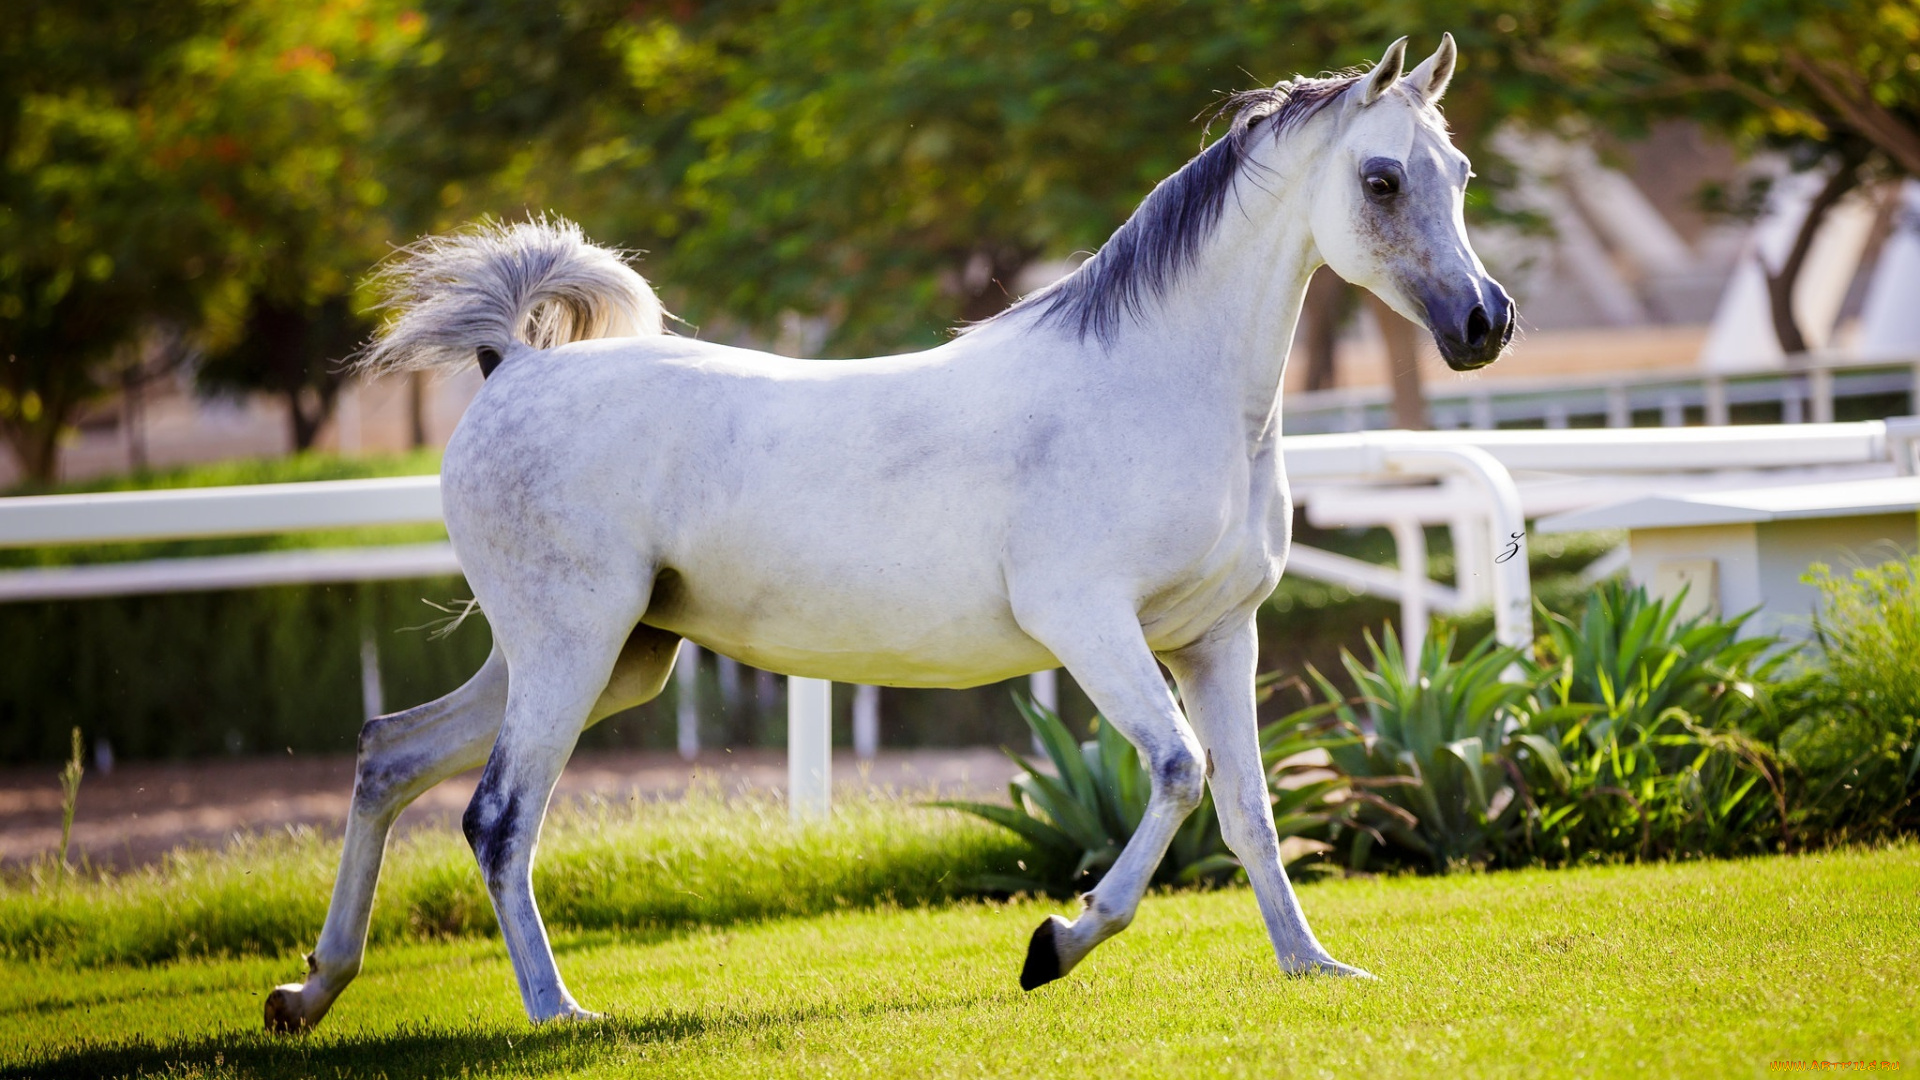 животные, лошади, хвост, грива, бег, серый, красавец, солнце, лето, свет, конь, загон, трава